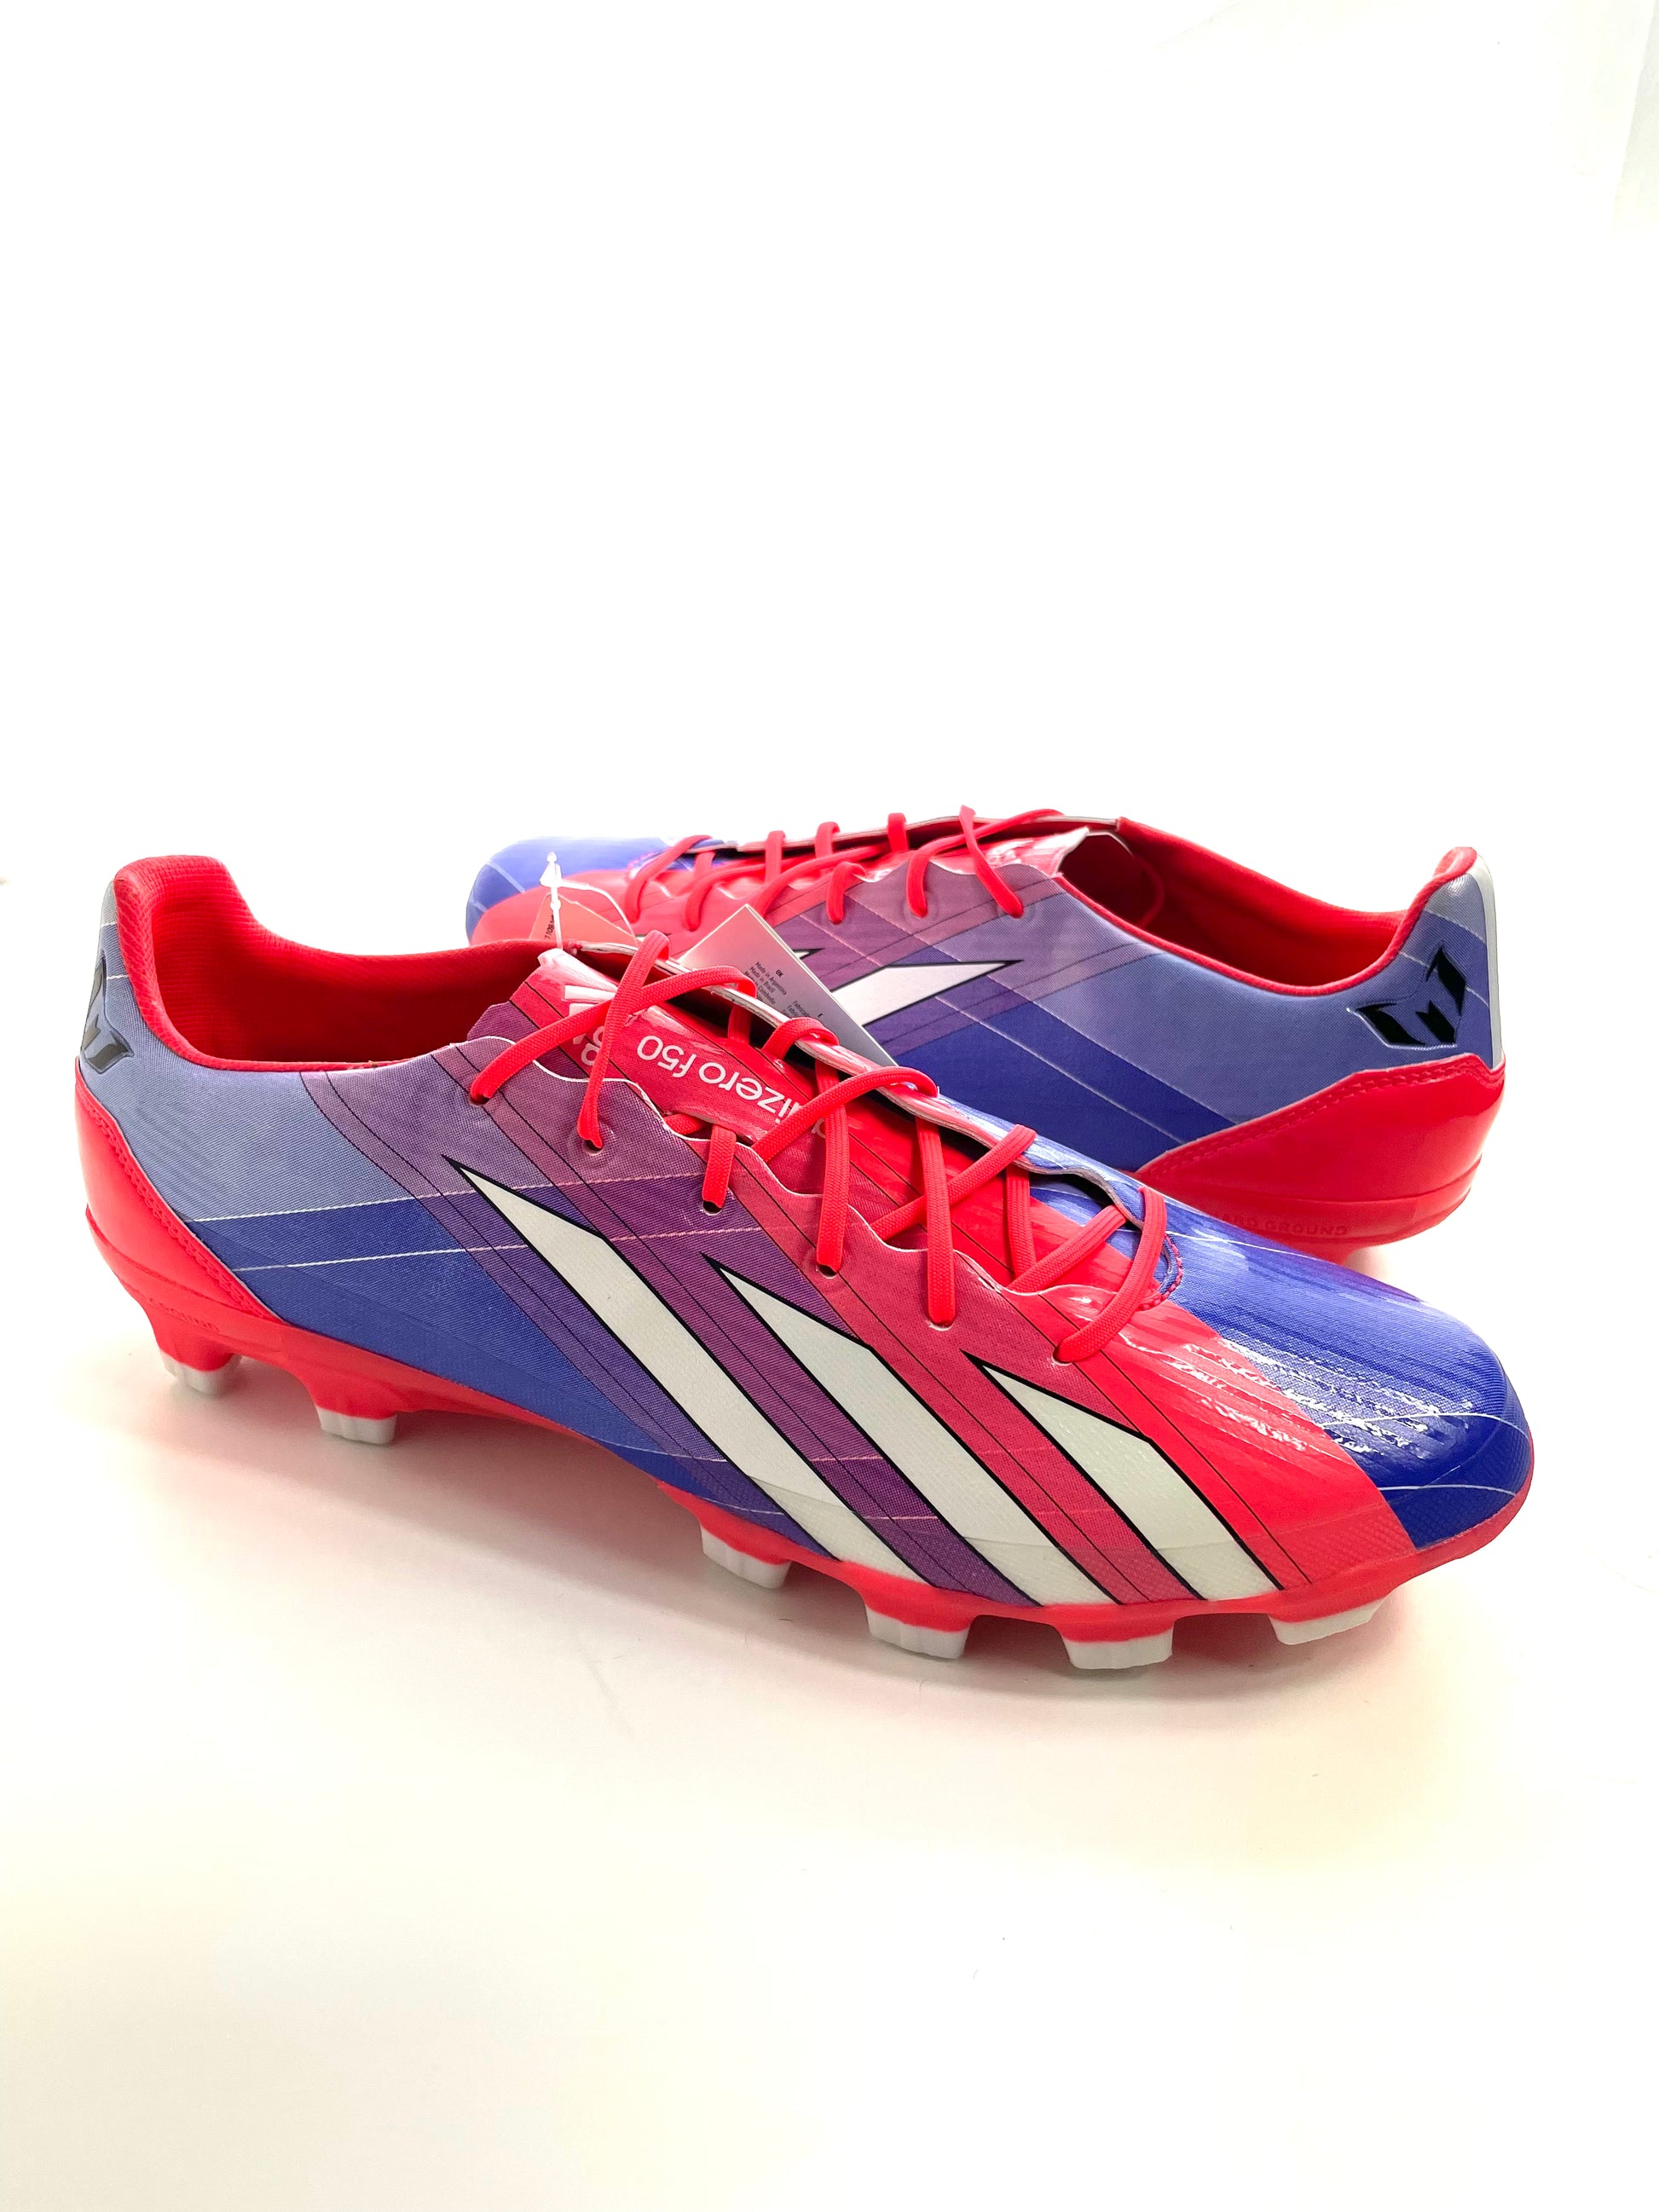 Habubu madlavning Stavning Adidas F50 Adizero Messi (AG) – Halt's Boots